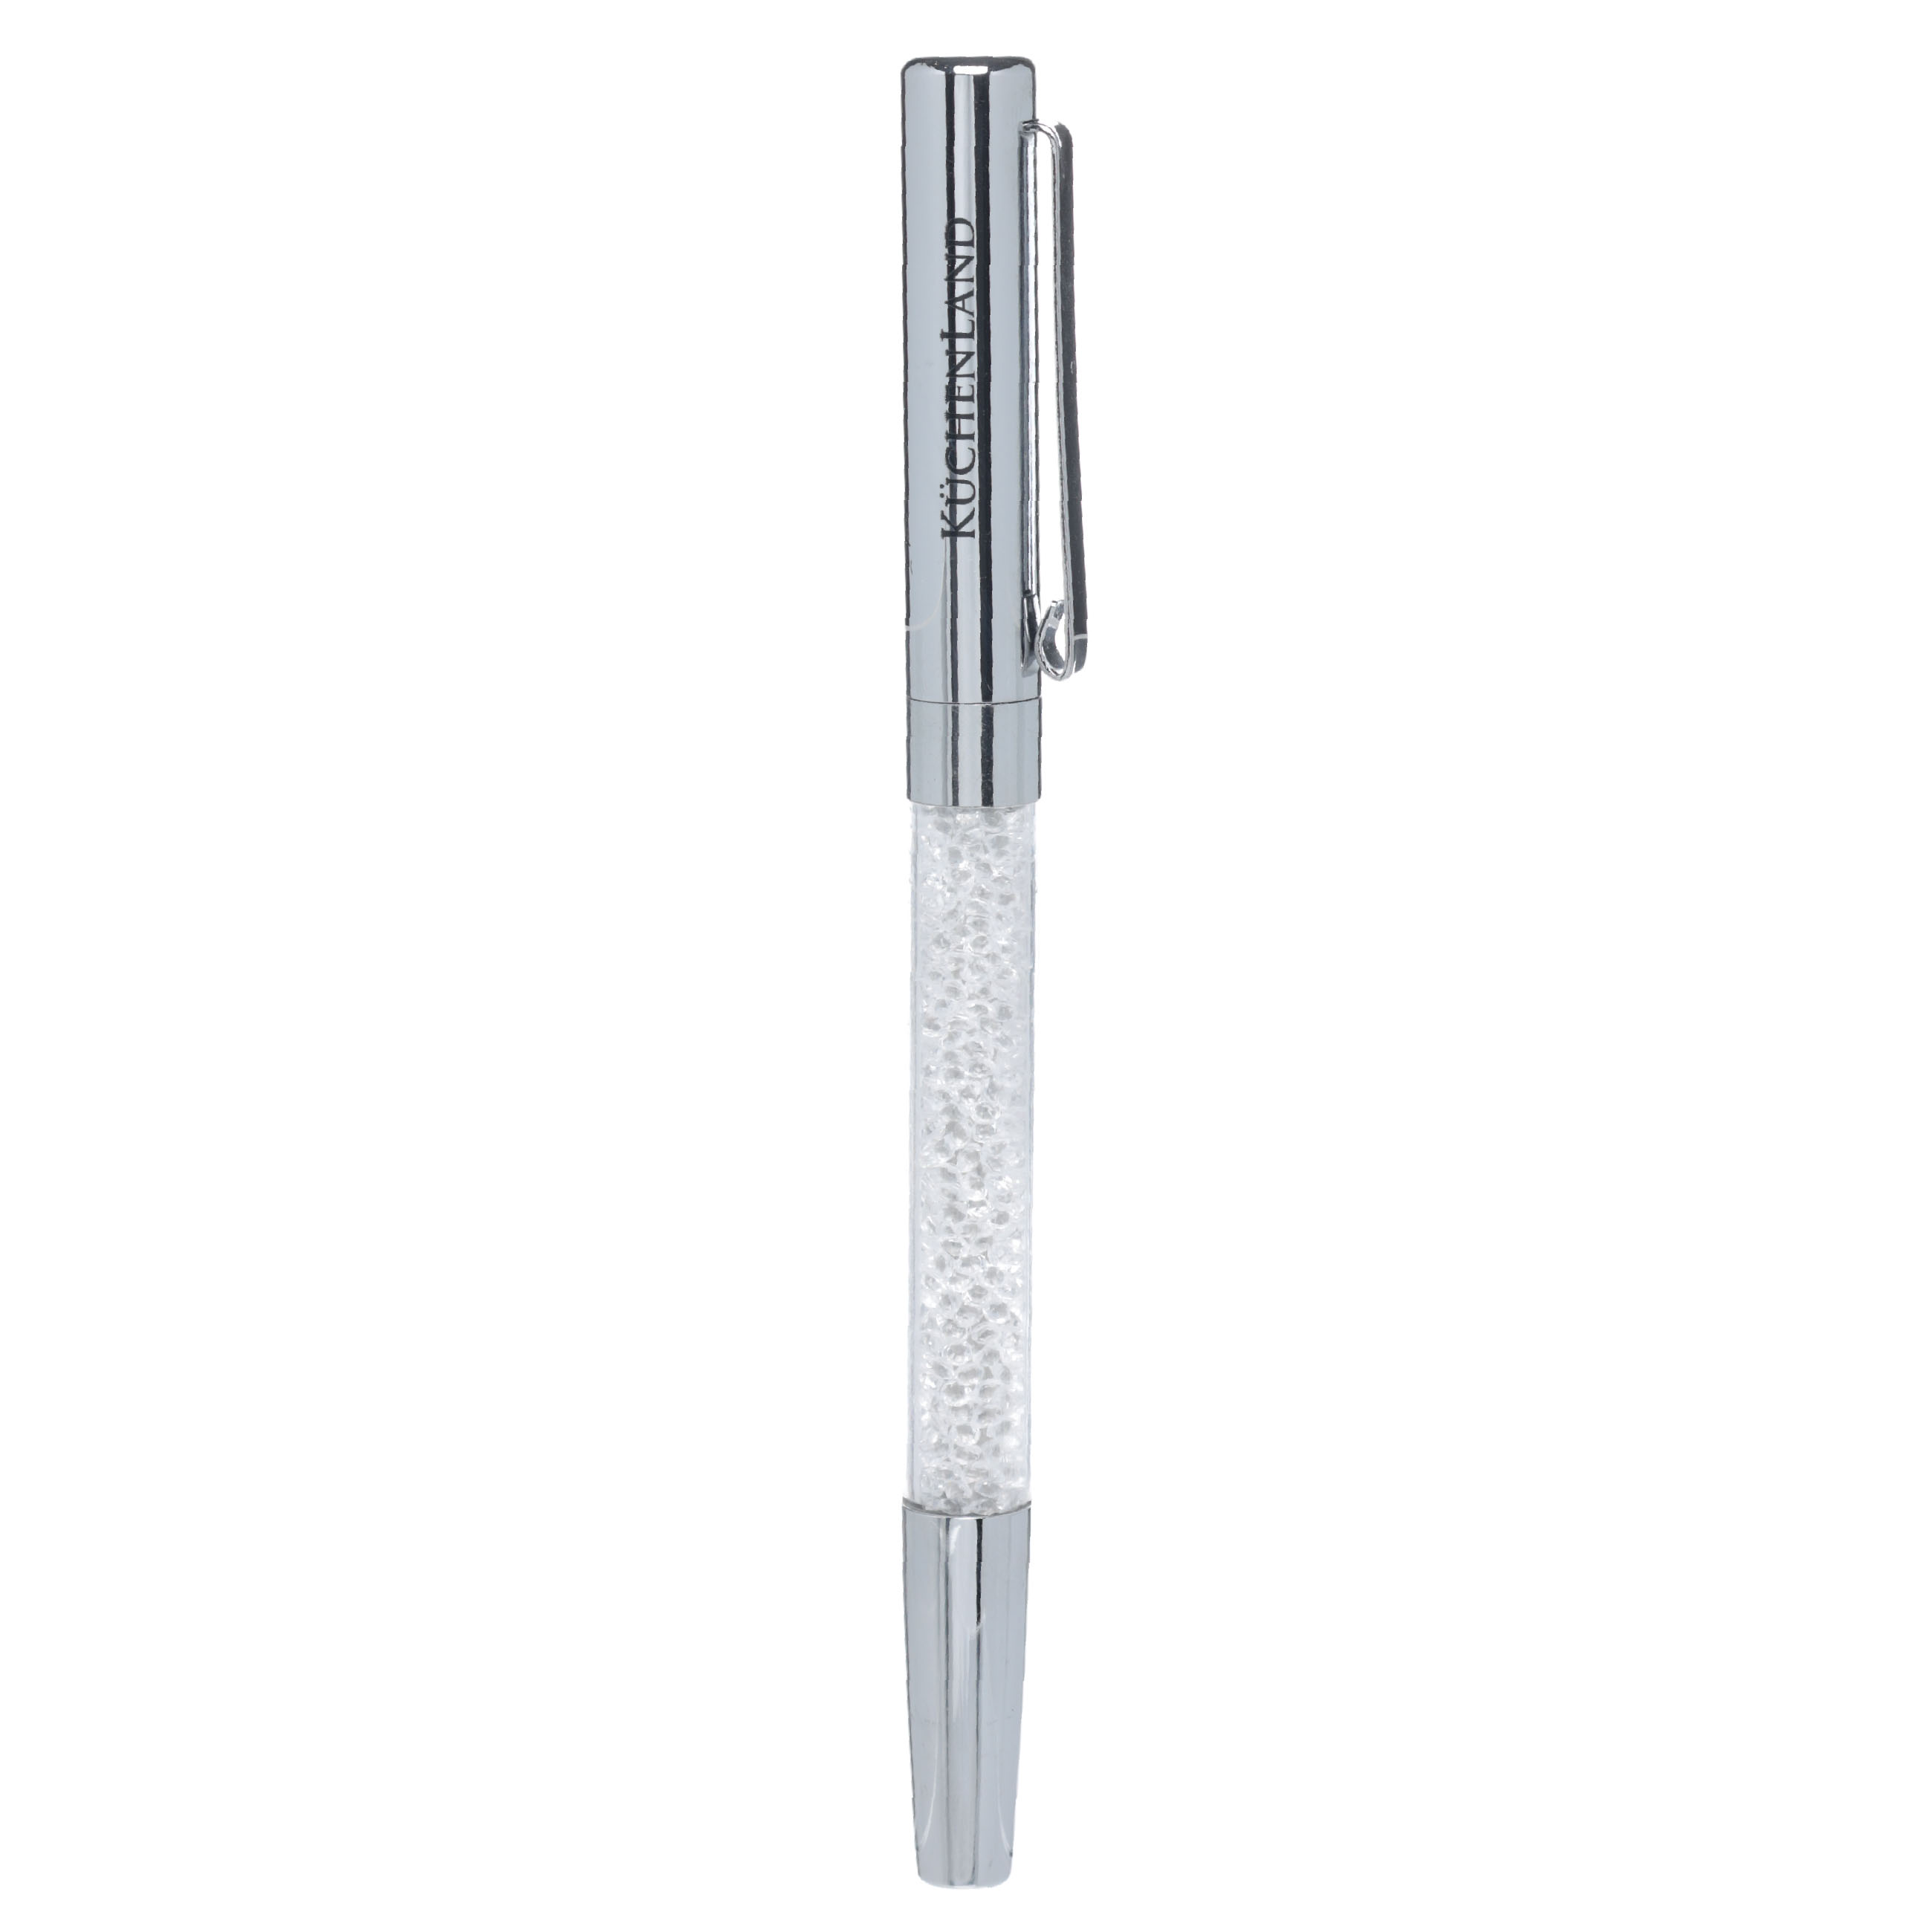 Ручка гелевая, 15 см, сталь, серебристая, Кристаллы, Draw cristal изображение № 2